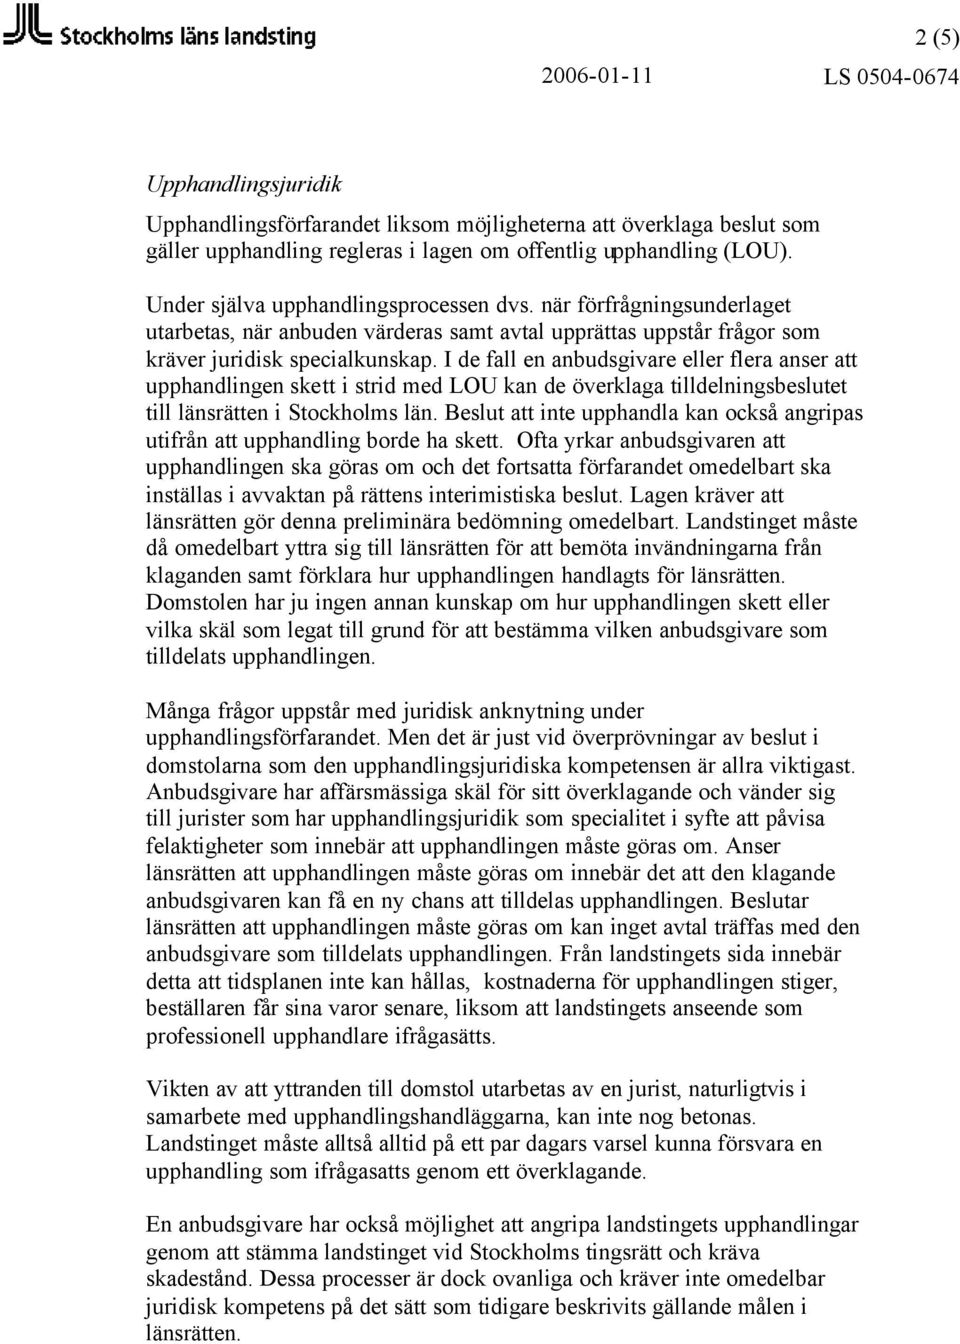 I de fall en anbudsgivare eller flera anser att upphandlingen skett i strid med LOU kan de överklaga tilldelningsbeslutet till länsrätten i Stockholms län.